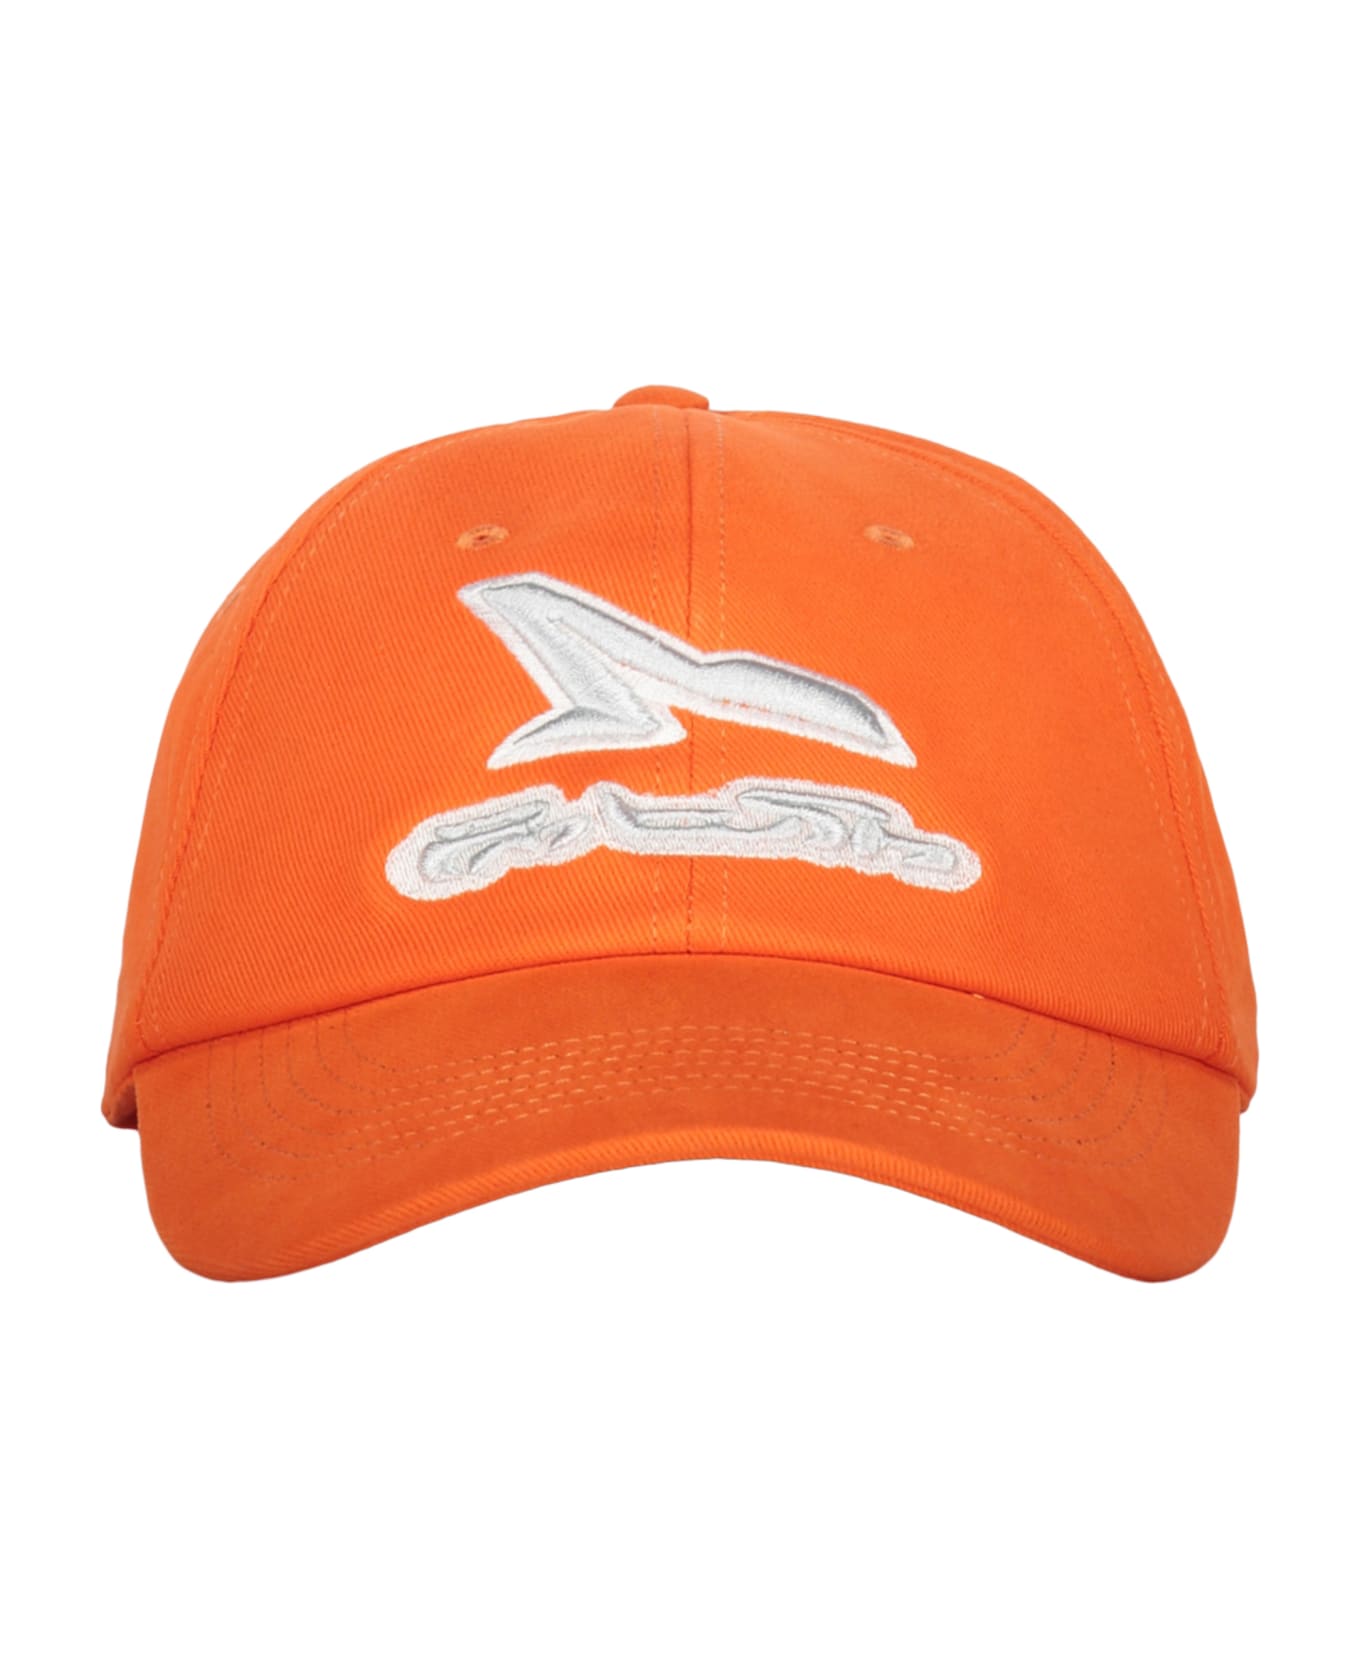 AMBUSH Baseball Cap - Orange 帽子